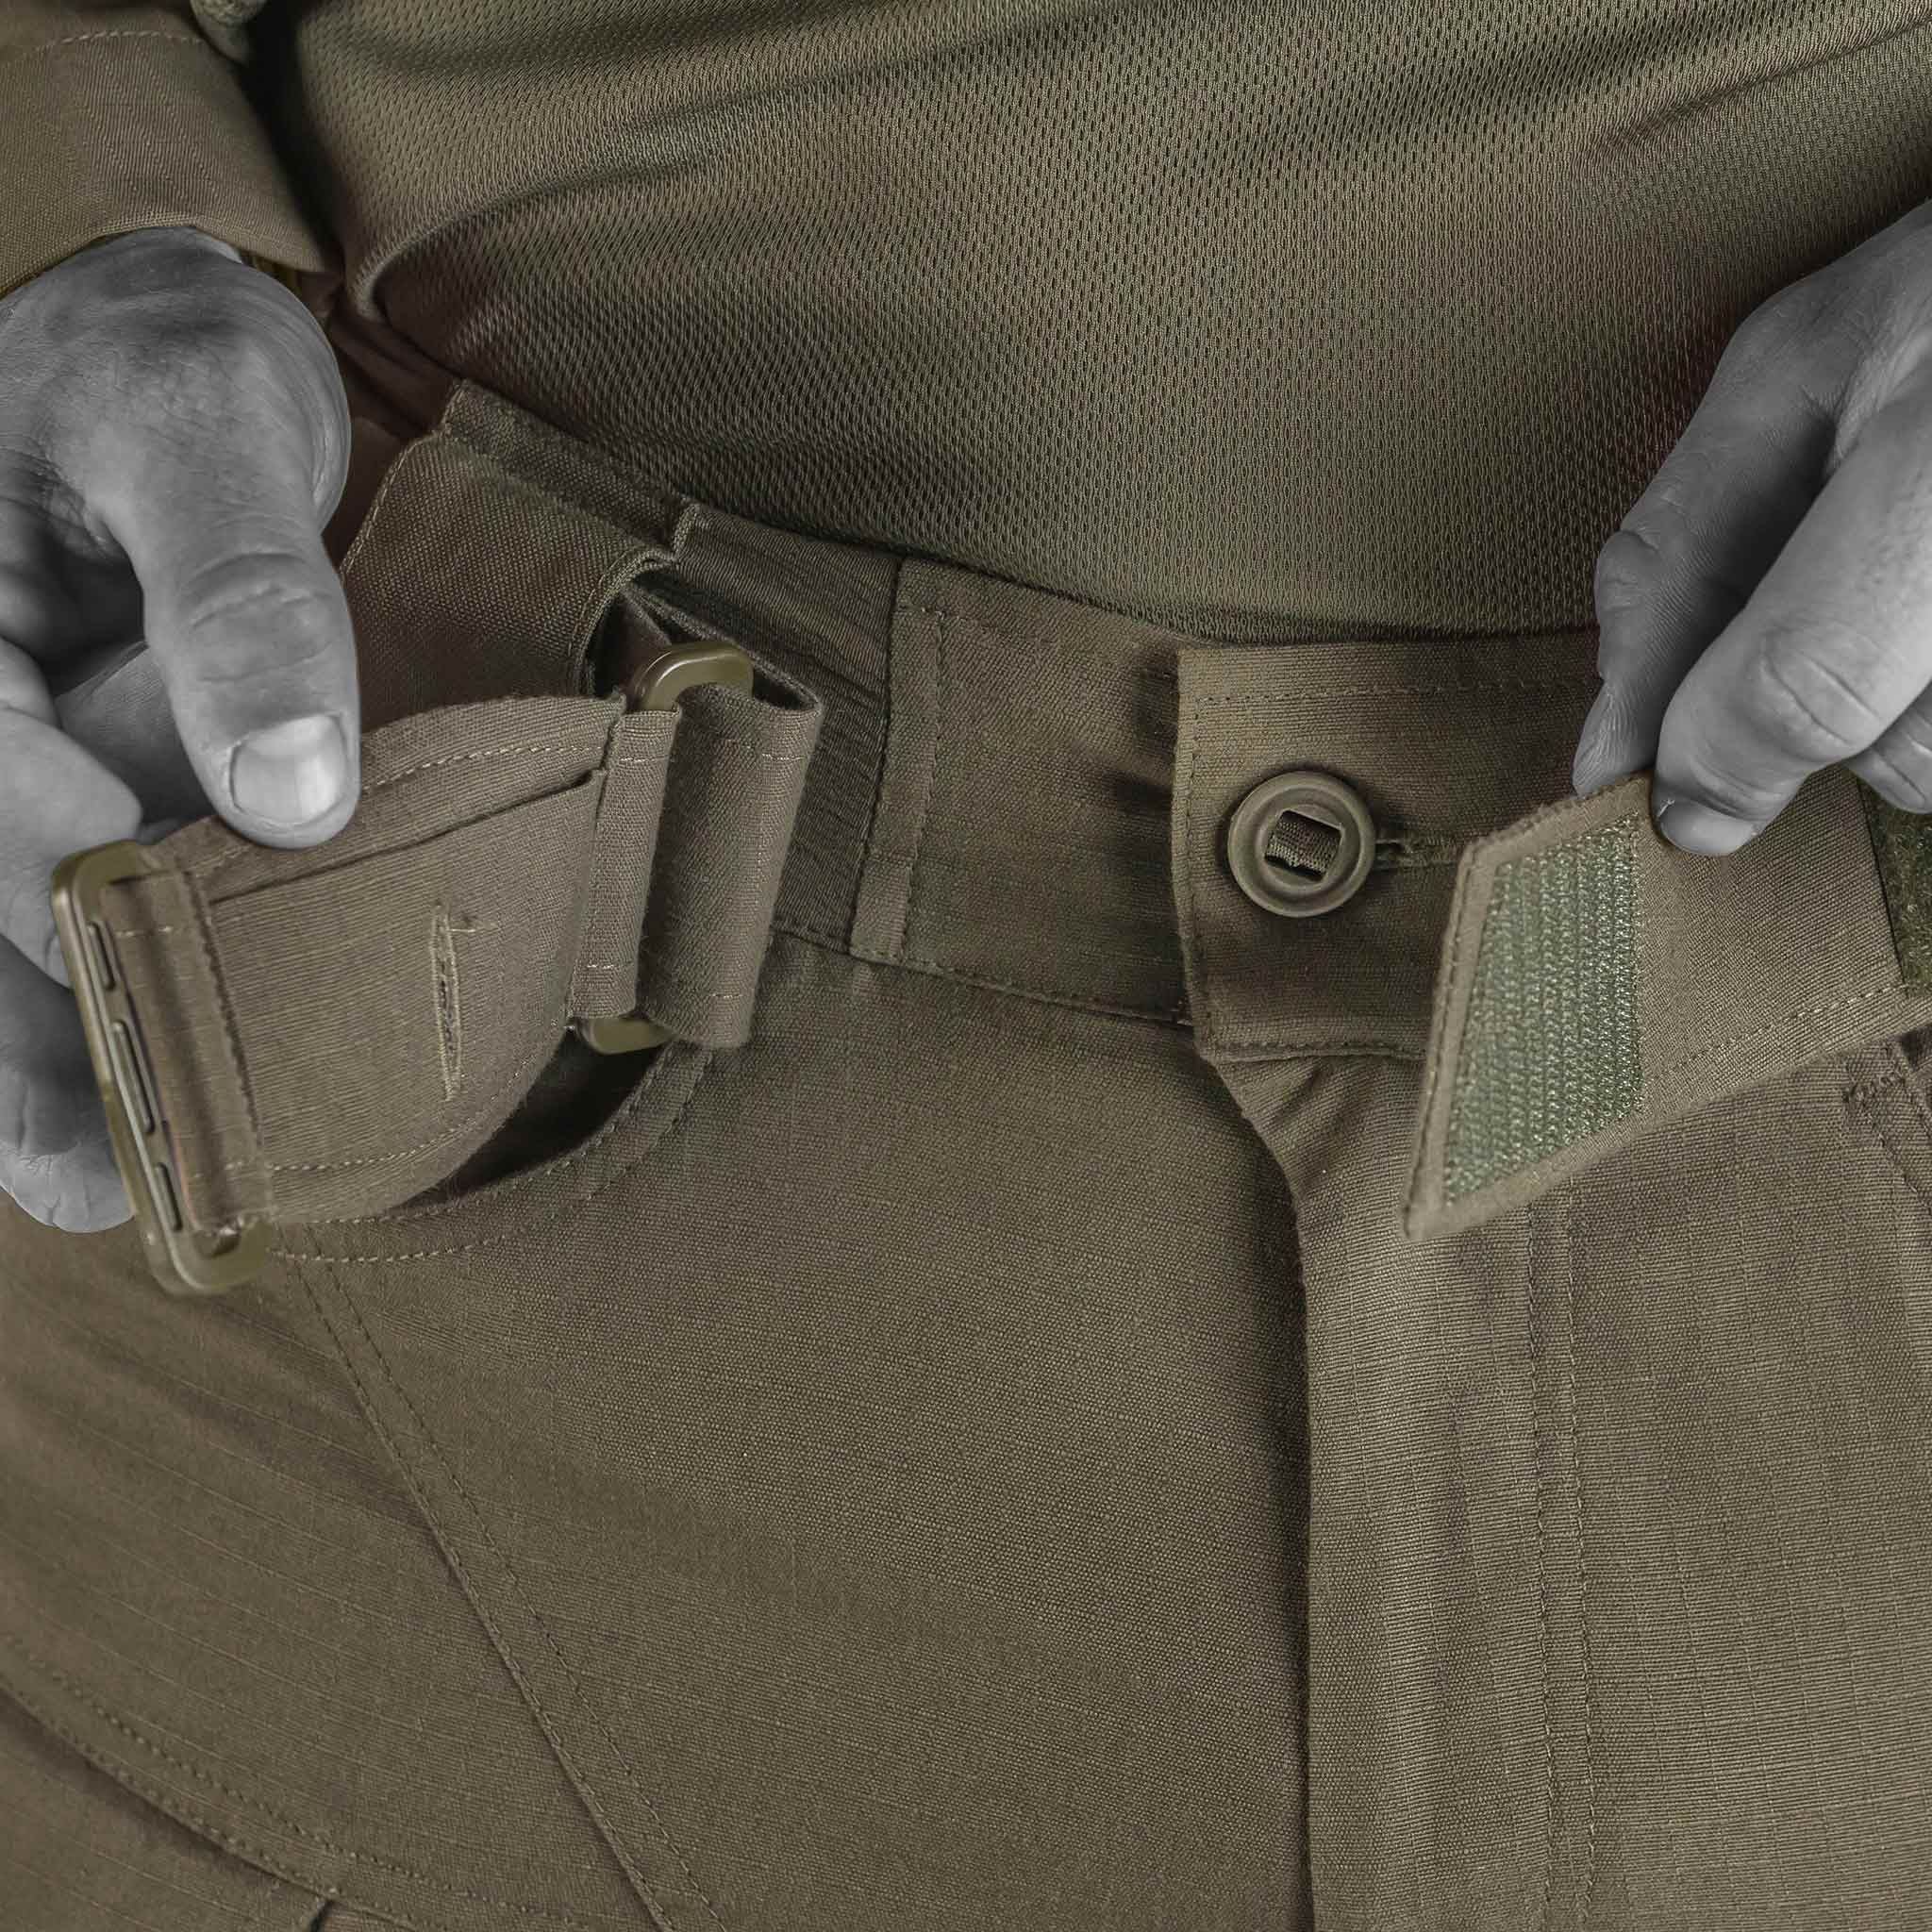 UF PRO - Striker UTL Combat Pants - Brown Grey